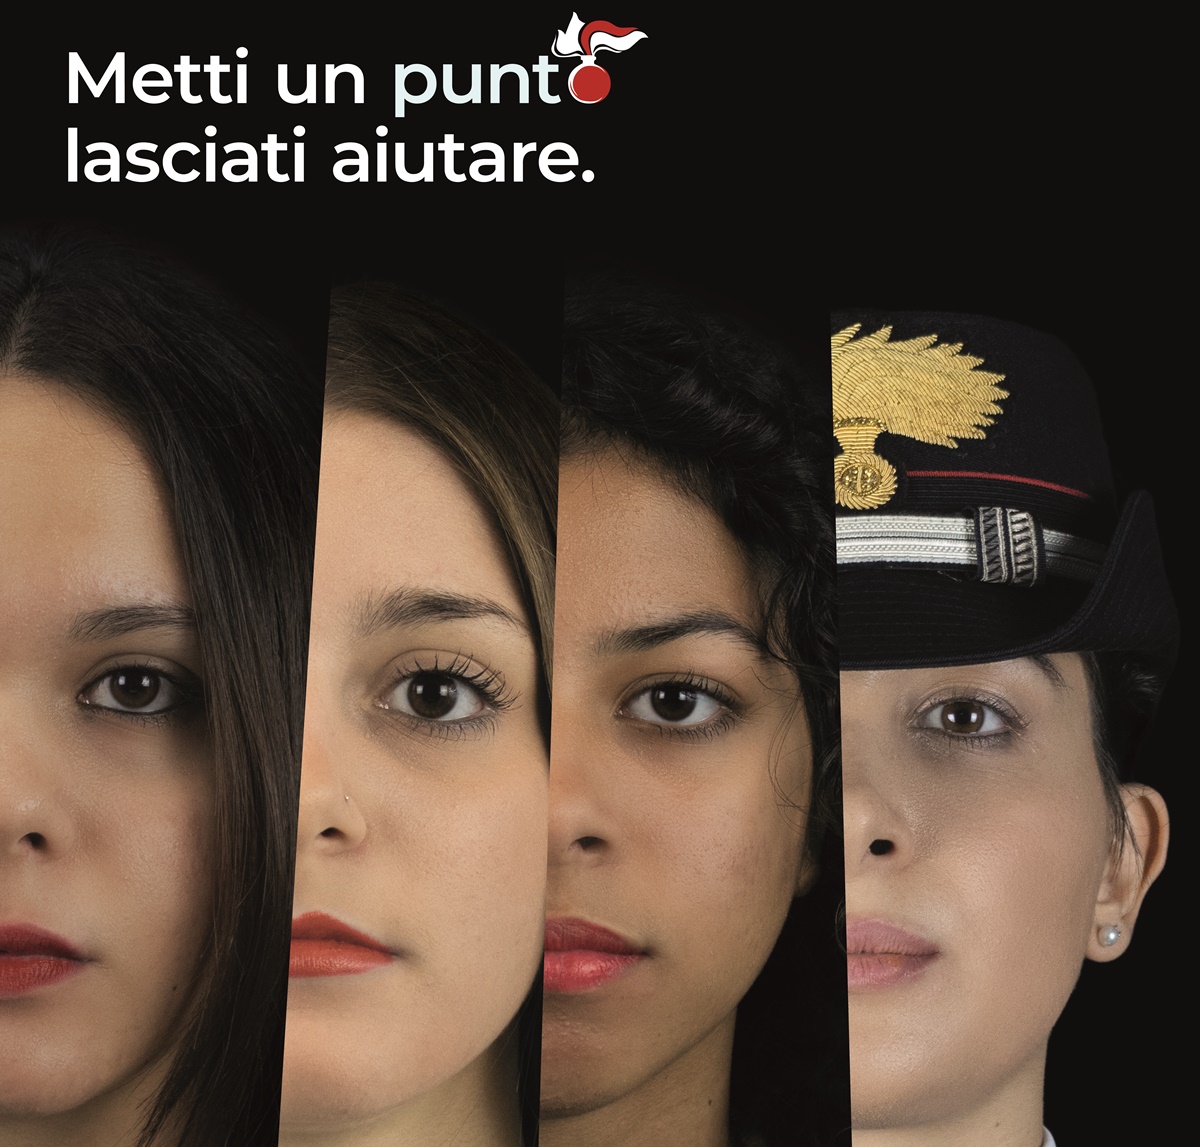 Giornata contro la violenza sulle donne, ecco la campagna di sensibilizzazione dell’Arma – VIDEO